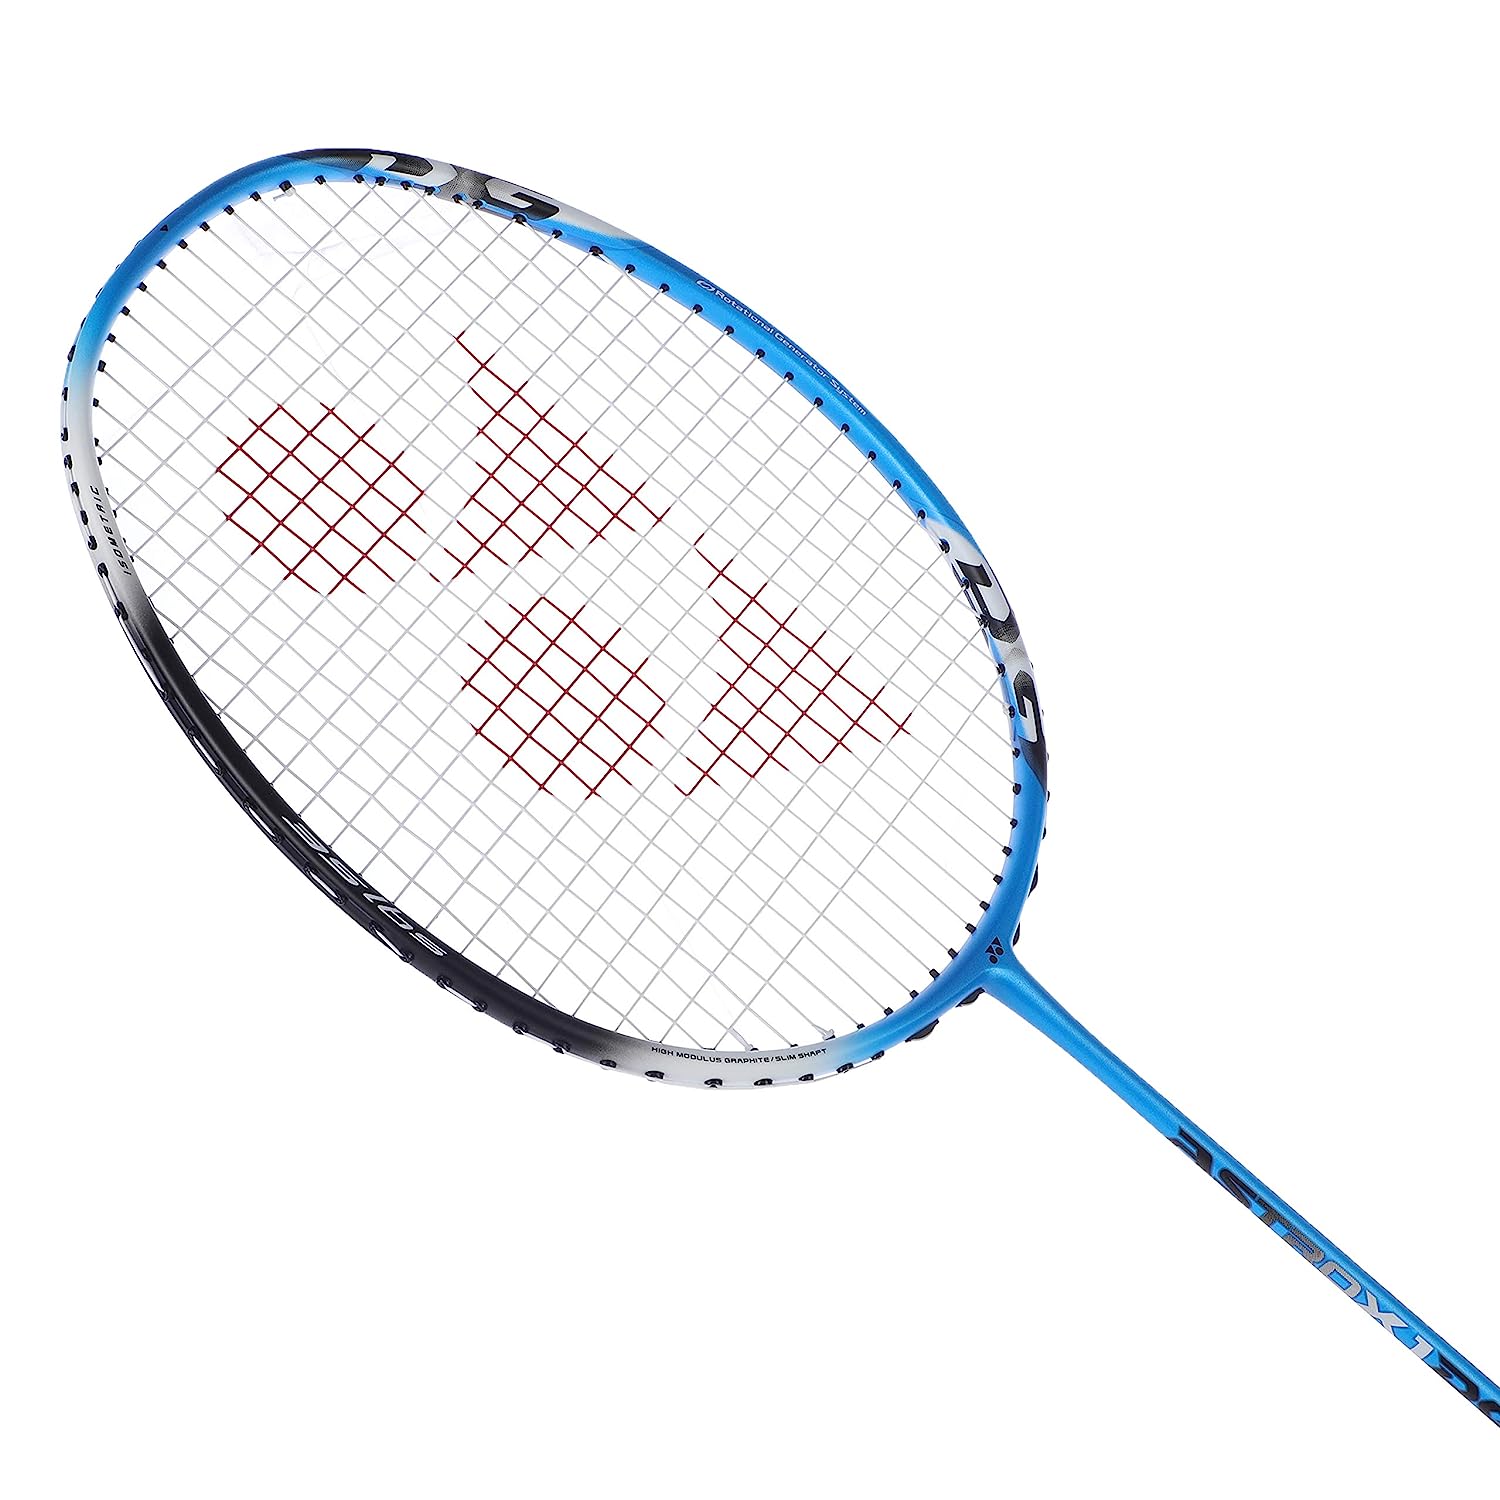 YONEX Graphite Badminton Racket Astrox 1DG (Blue, Black) sppartos